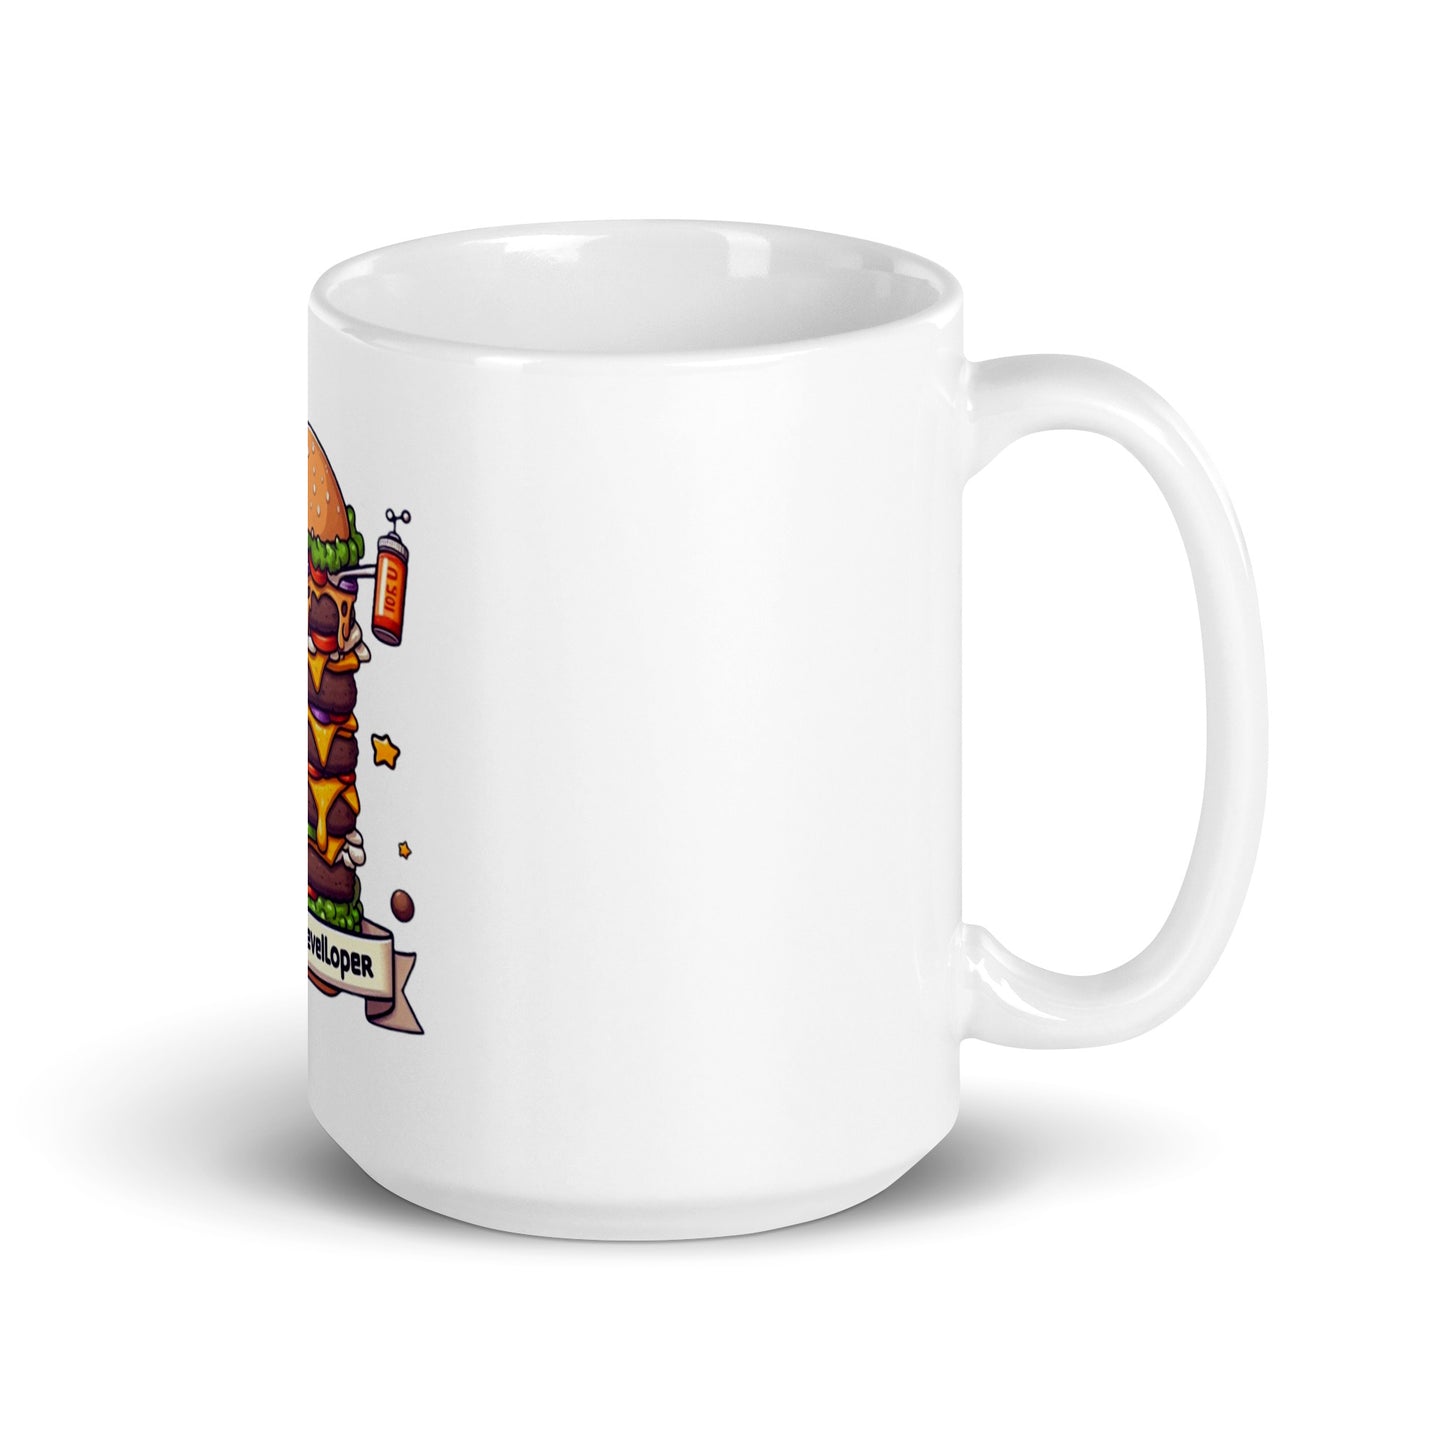 Full Stack Developer mug